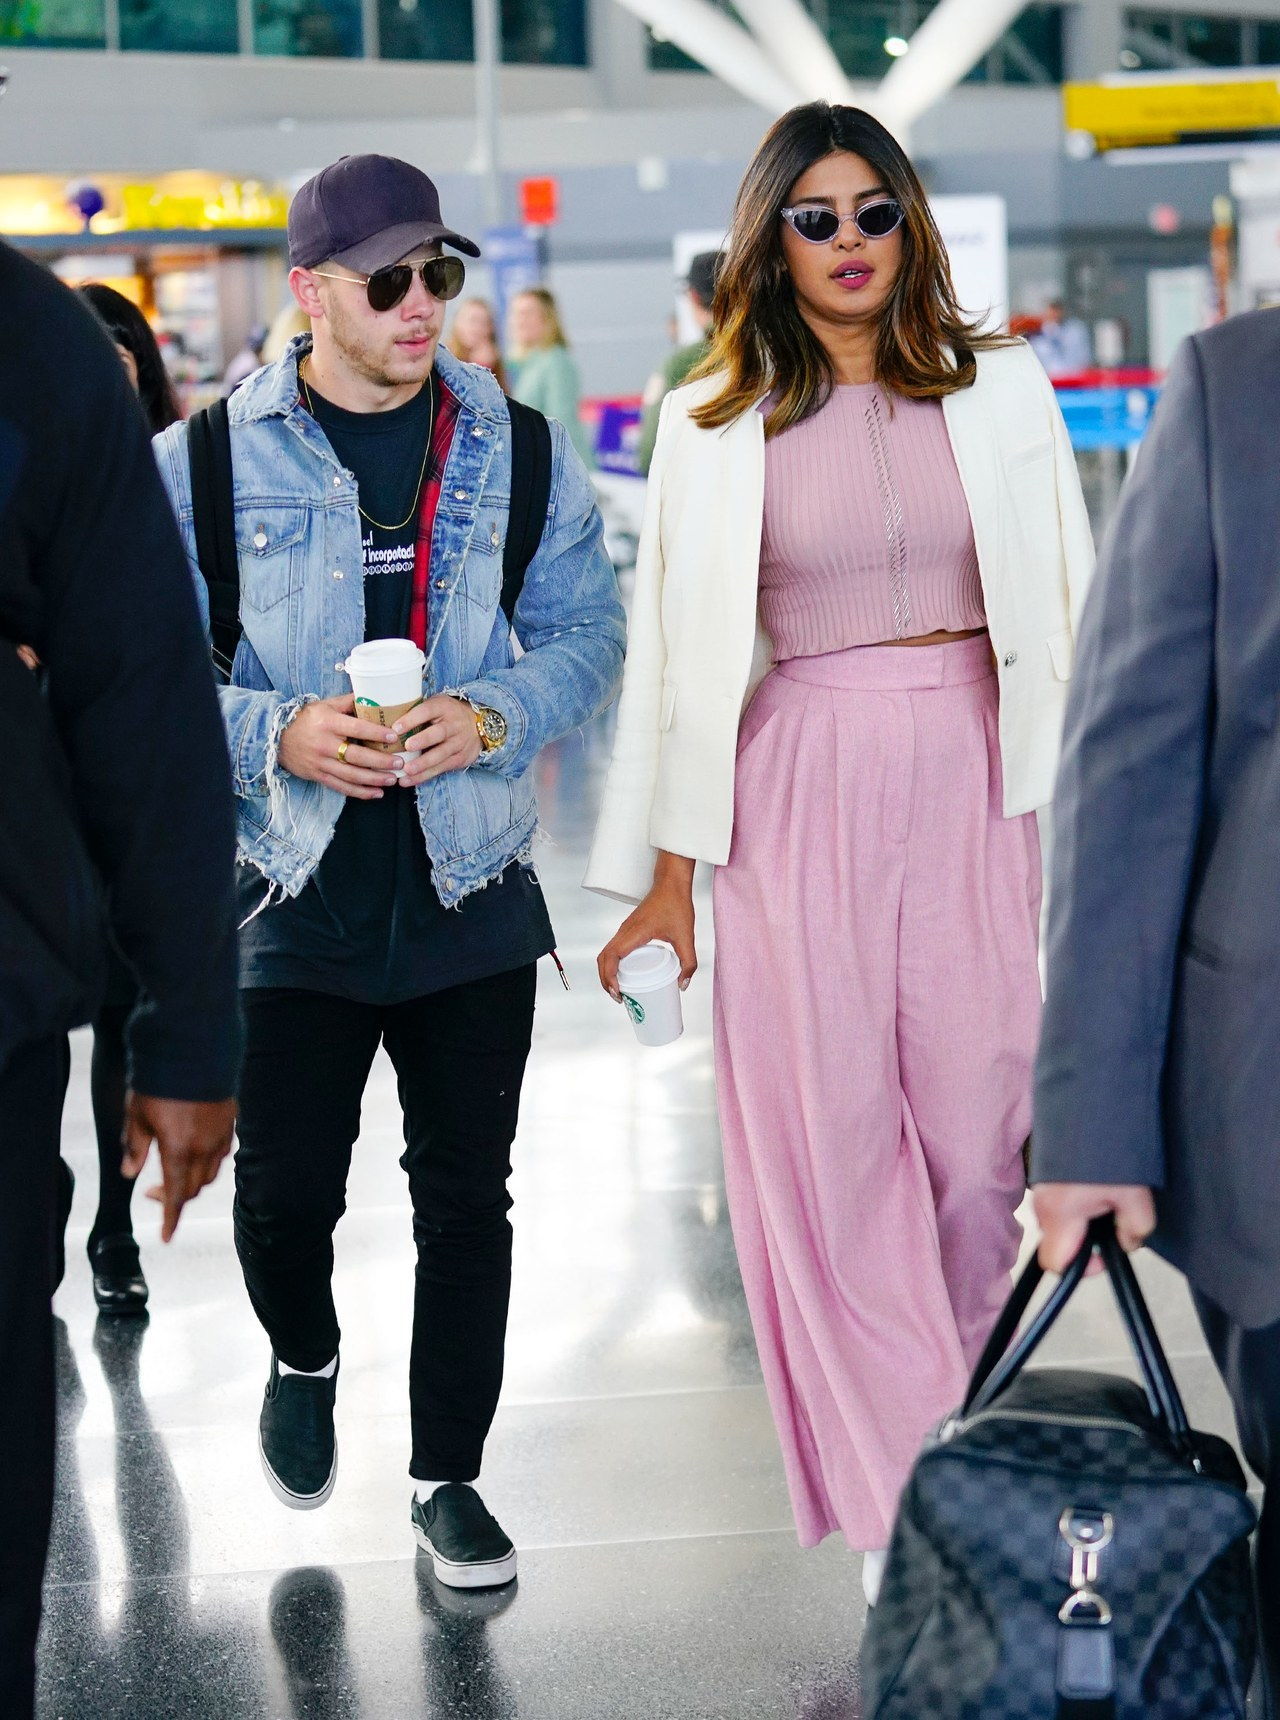 شق Jonas and Priyanka Chopra arrive at JFK Airport together in New York